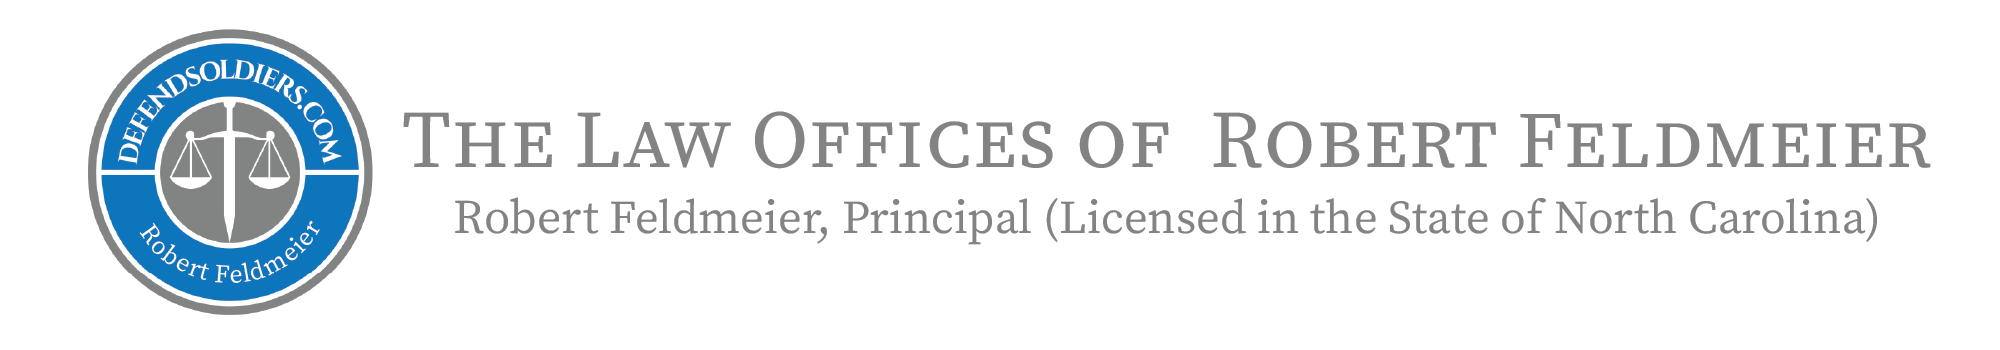 The Law Offices of Robert Feldmeier Logo